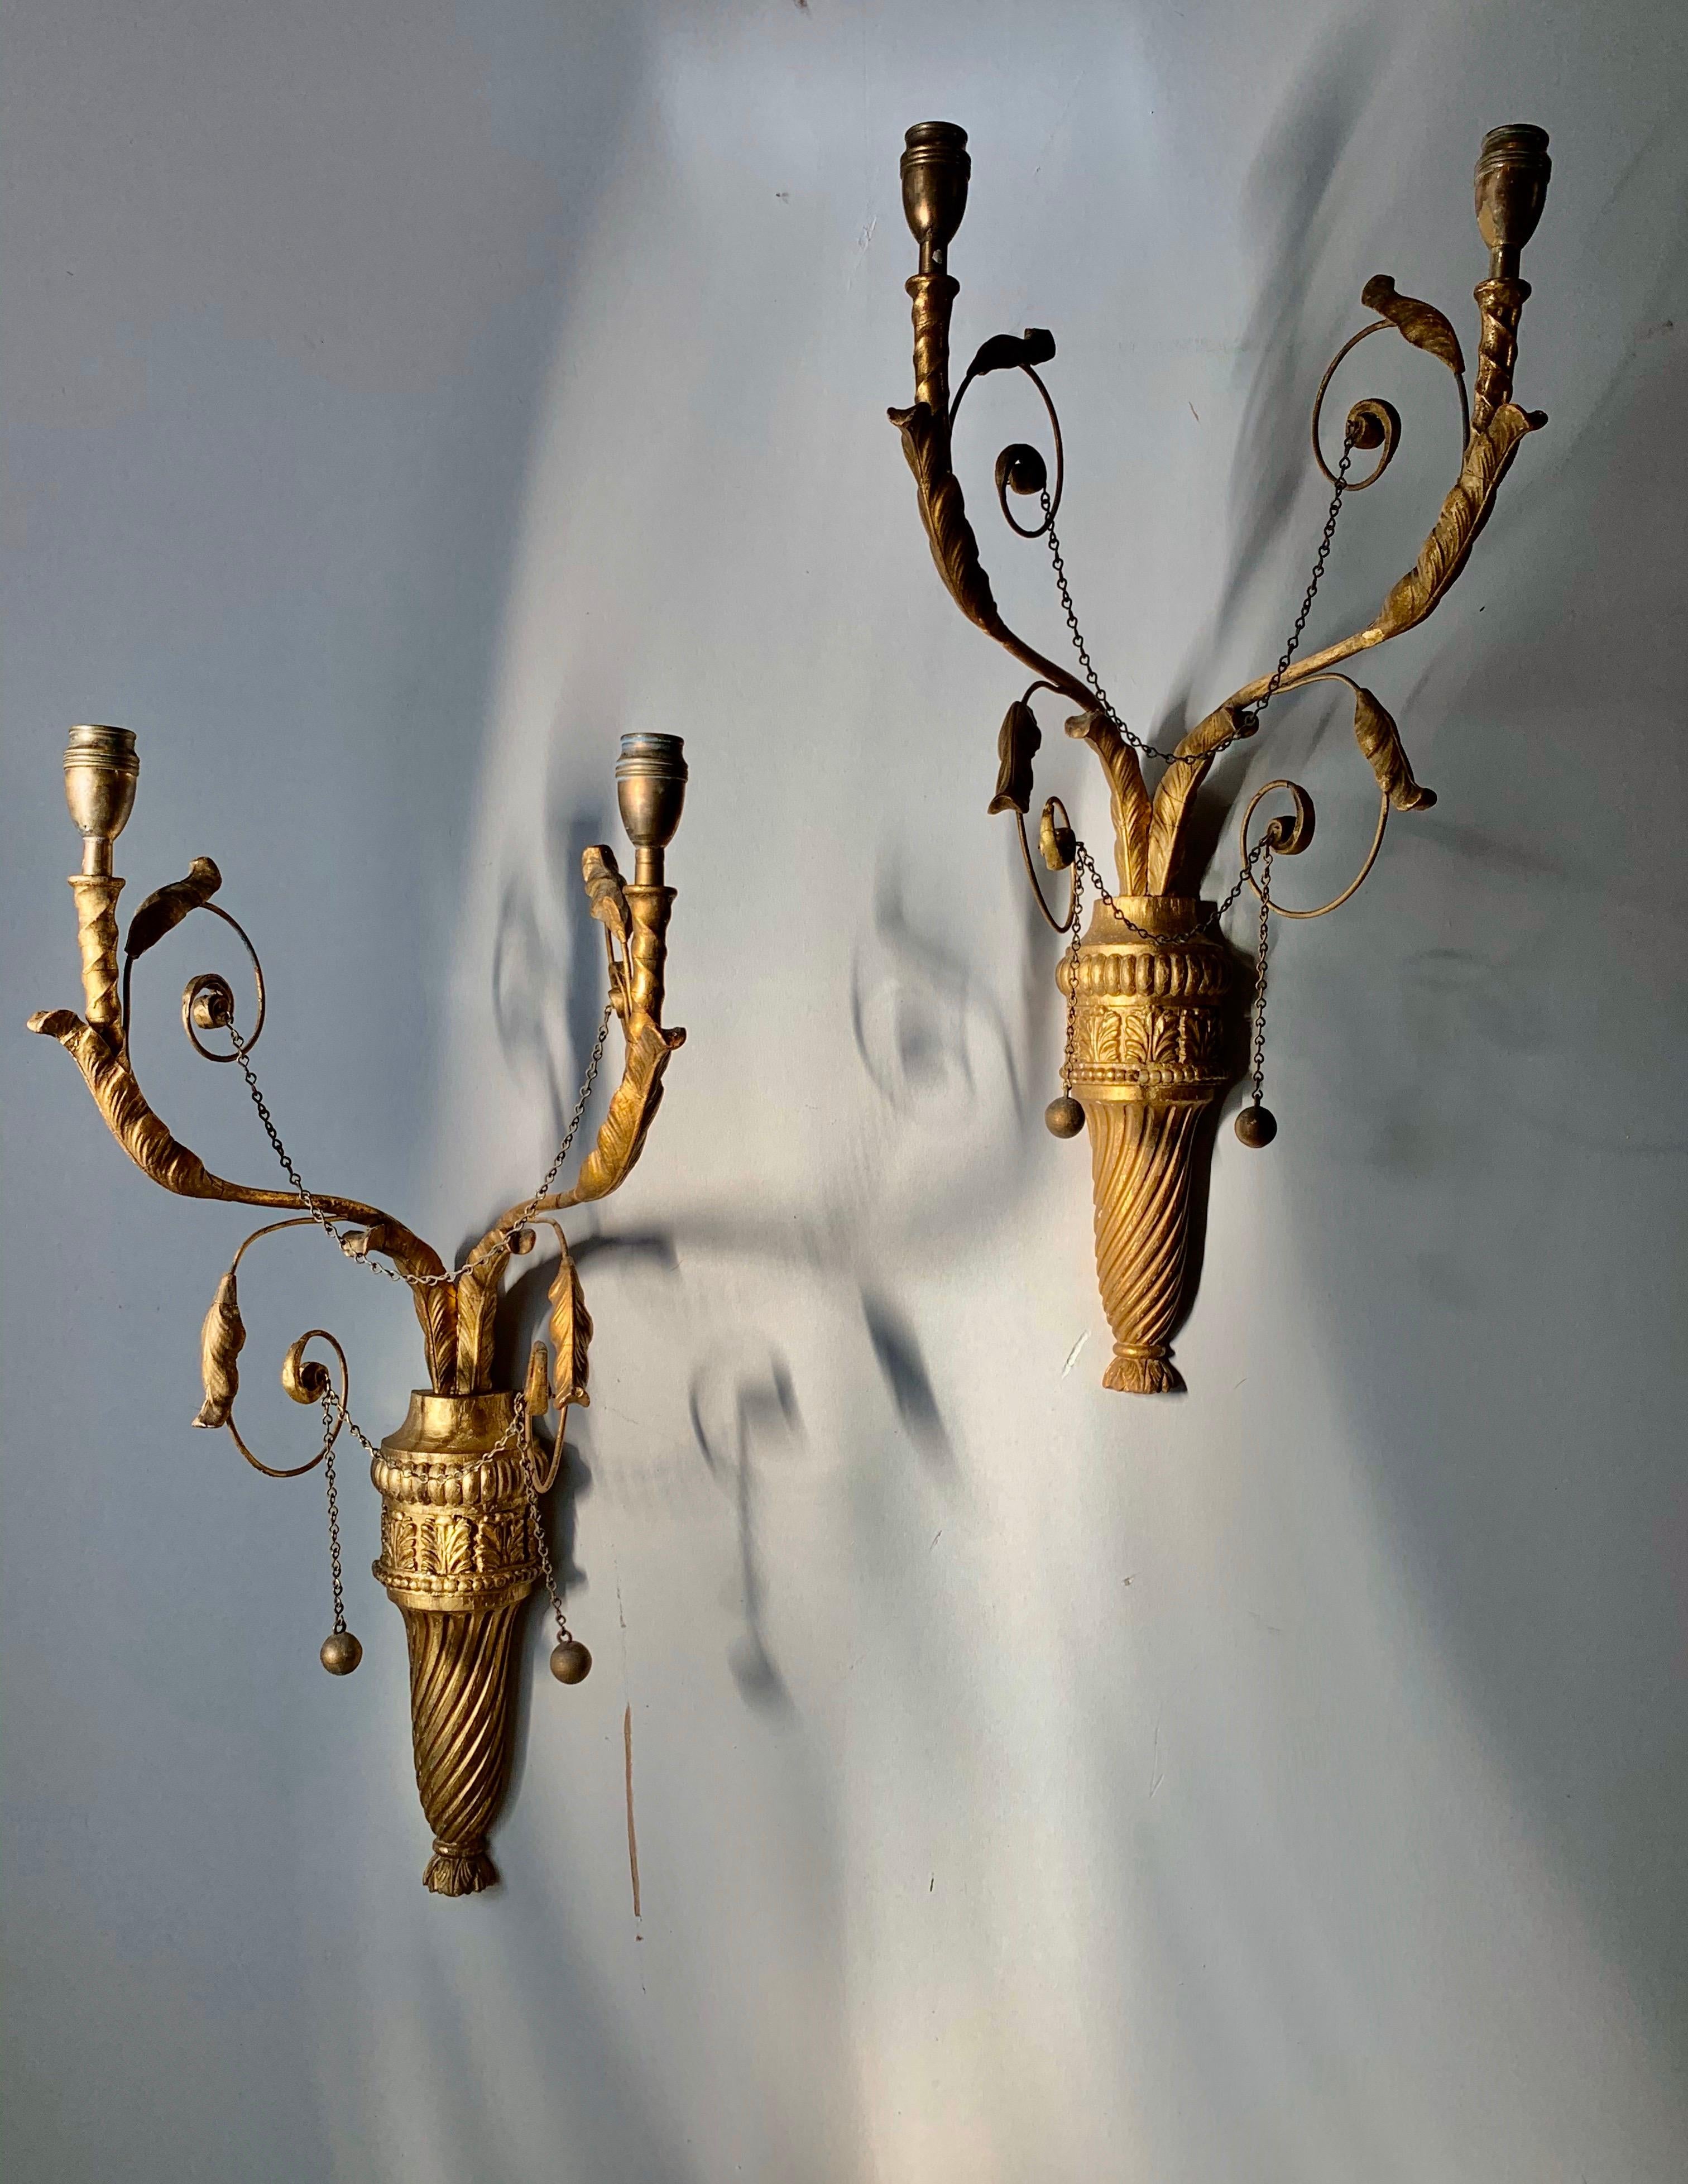 Paire de délicates appliques murales néoclassiques anglaises du XIXe siècle, de style Adams
Deux bras ornés de feuillages s'élèvent à partir des urnes en bois doré, sculptées à la main et pourvues d'anches.